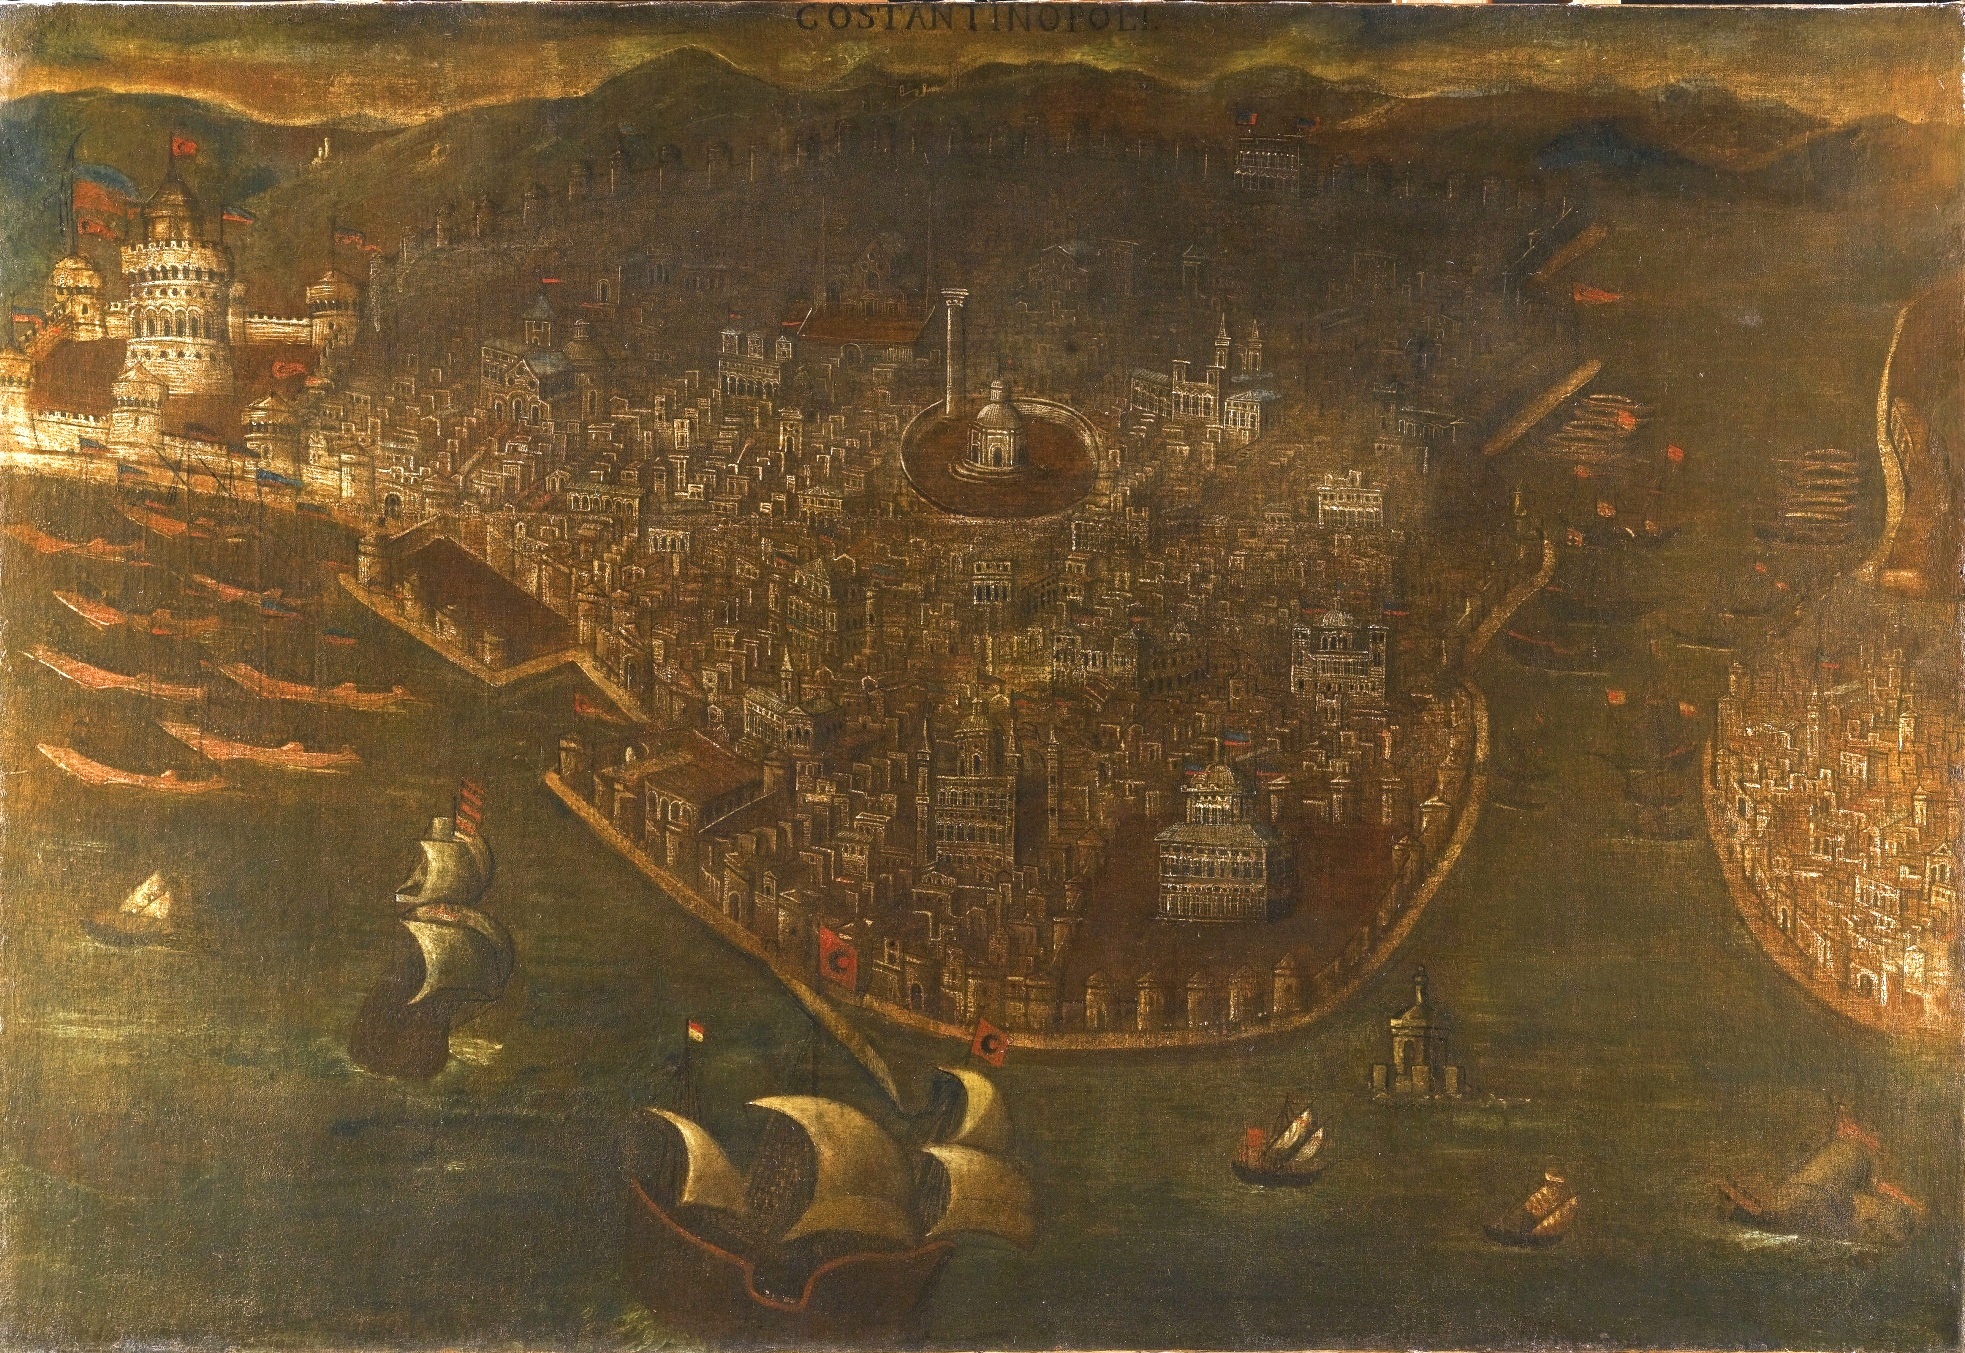 Σώπασε κυρά Δέσποινα και μη πολυδακρύζεις, πάλι με χρόνους, με καιρούς, πάλι δικά μας θα 'ναι 29 Μαΐου 1453, Η άλωση της Κωνσταντινούπολης - Η Άλωση της Πόλης